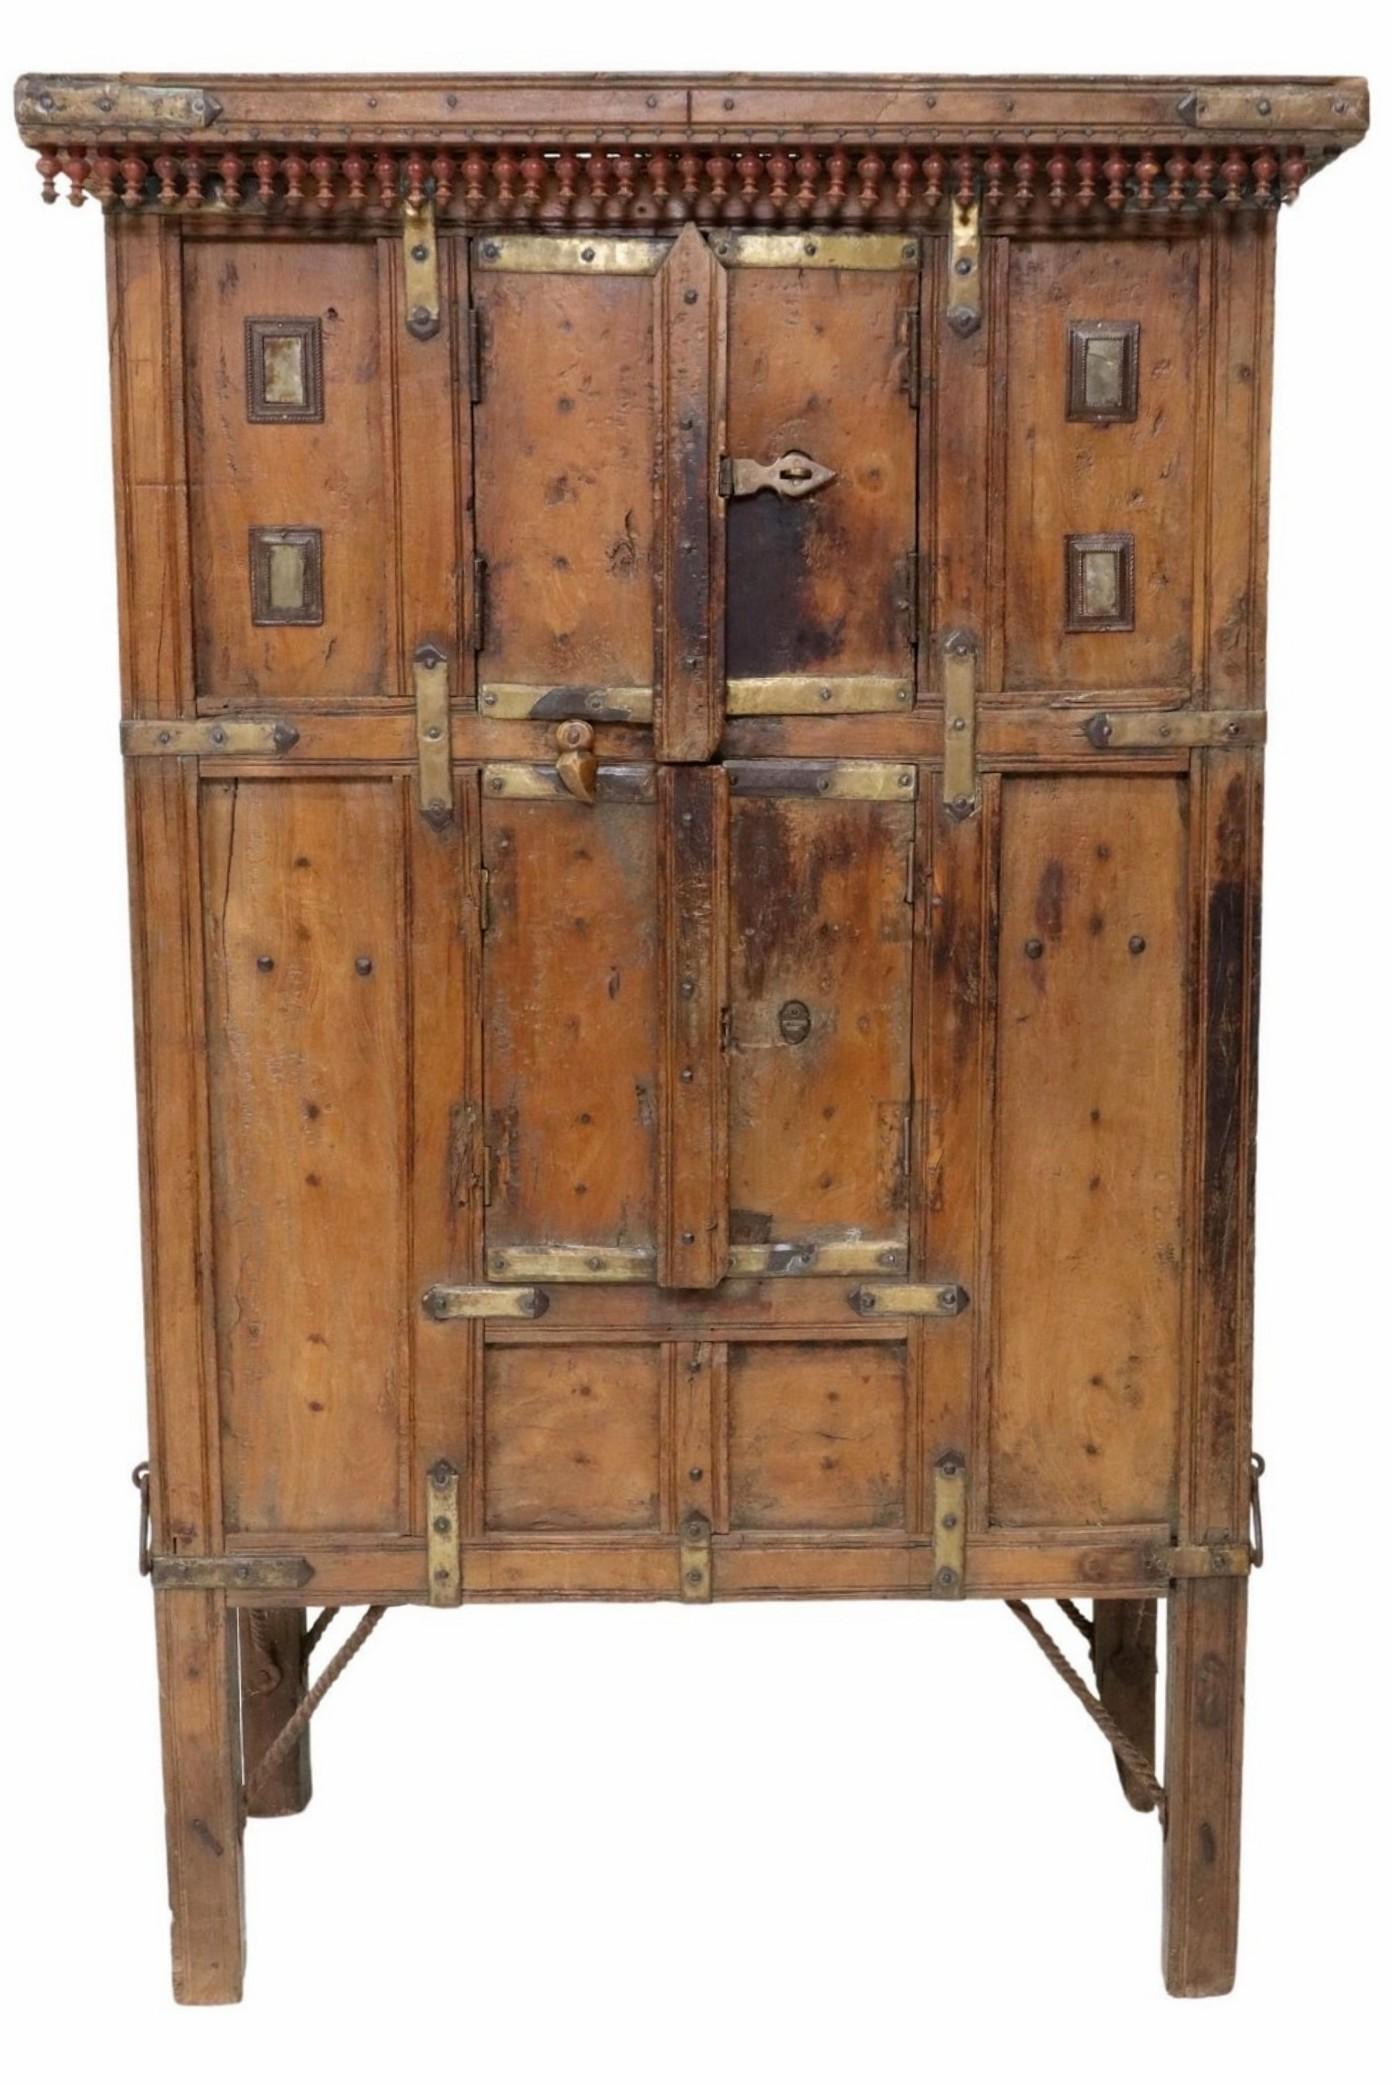 Rare et très impressionnante armoire rustique indienne en bois sculpté et fuseau monté sur métal. 

Fabriquée à la main en Inde au XIXe siècle, cette œuvre d'art populaire unique en son genre se caractérise par une corniche rectangulaire ornée d'un